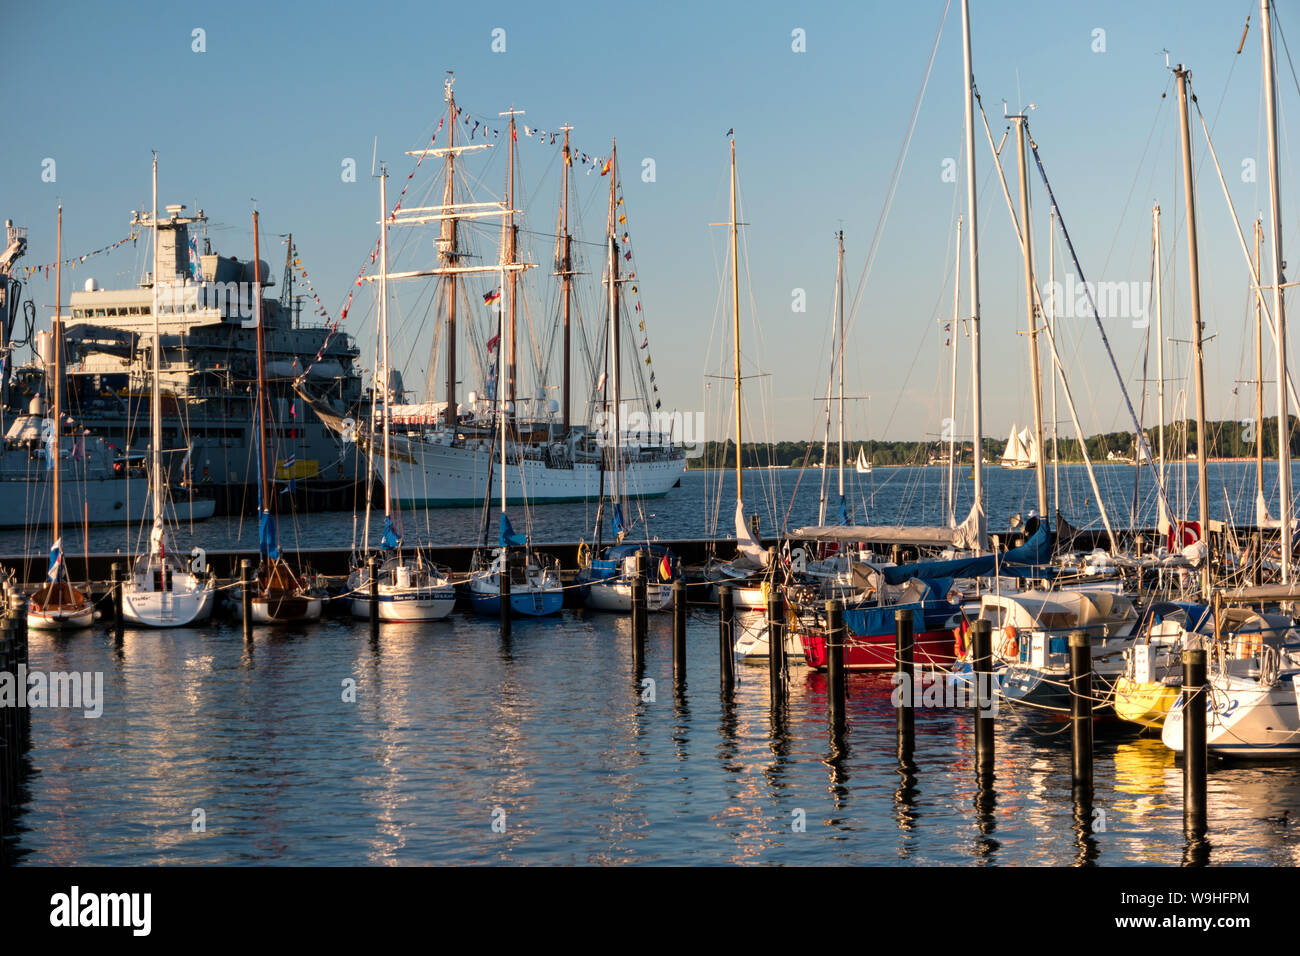 KIEL, Deutschland - Juni 22, 2019: Während der Kieler Woche 2019 den Marinestützpunkt Kiel organisiert eine offene Schiff im Tirpitzhafen. Illustrative editoria Stockfoto